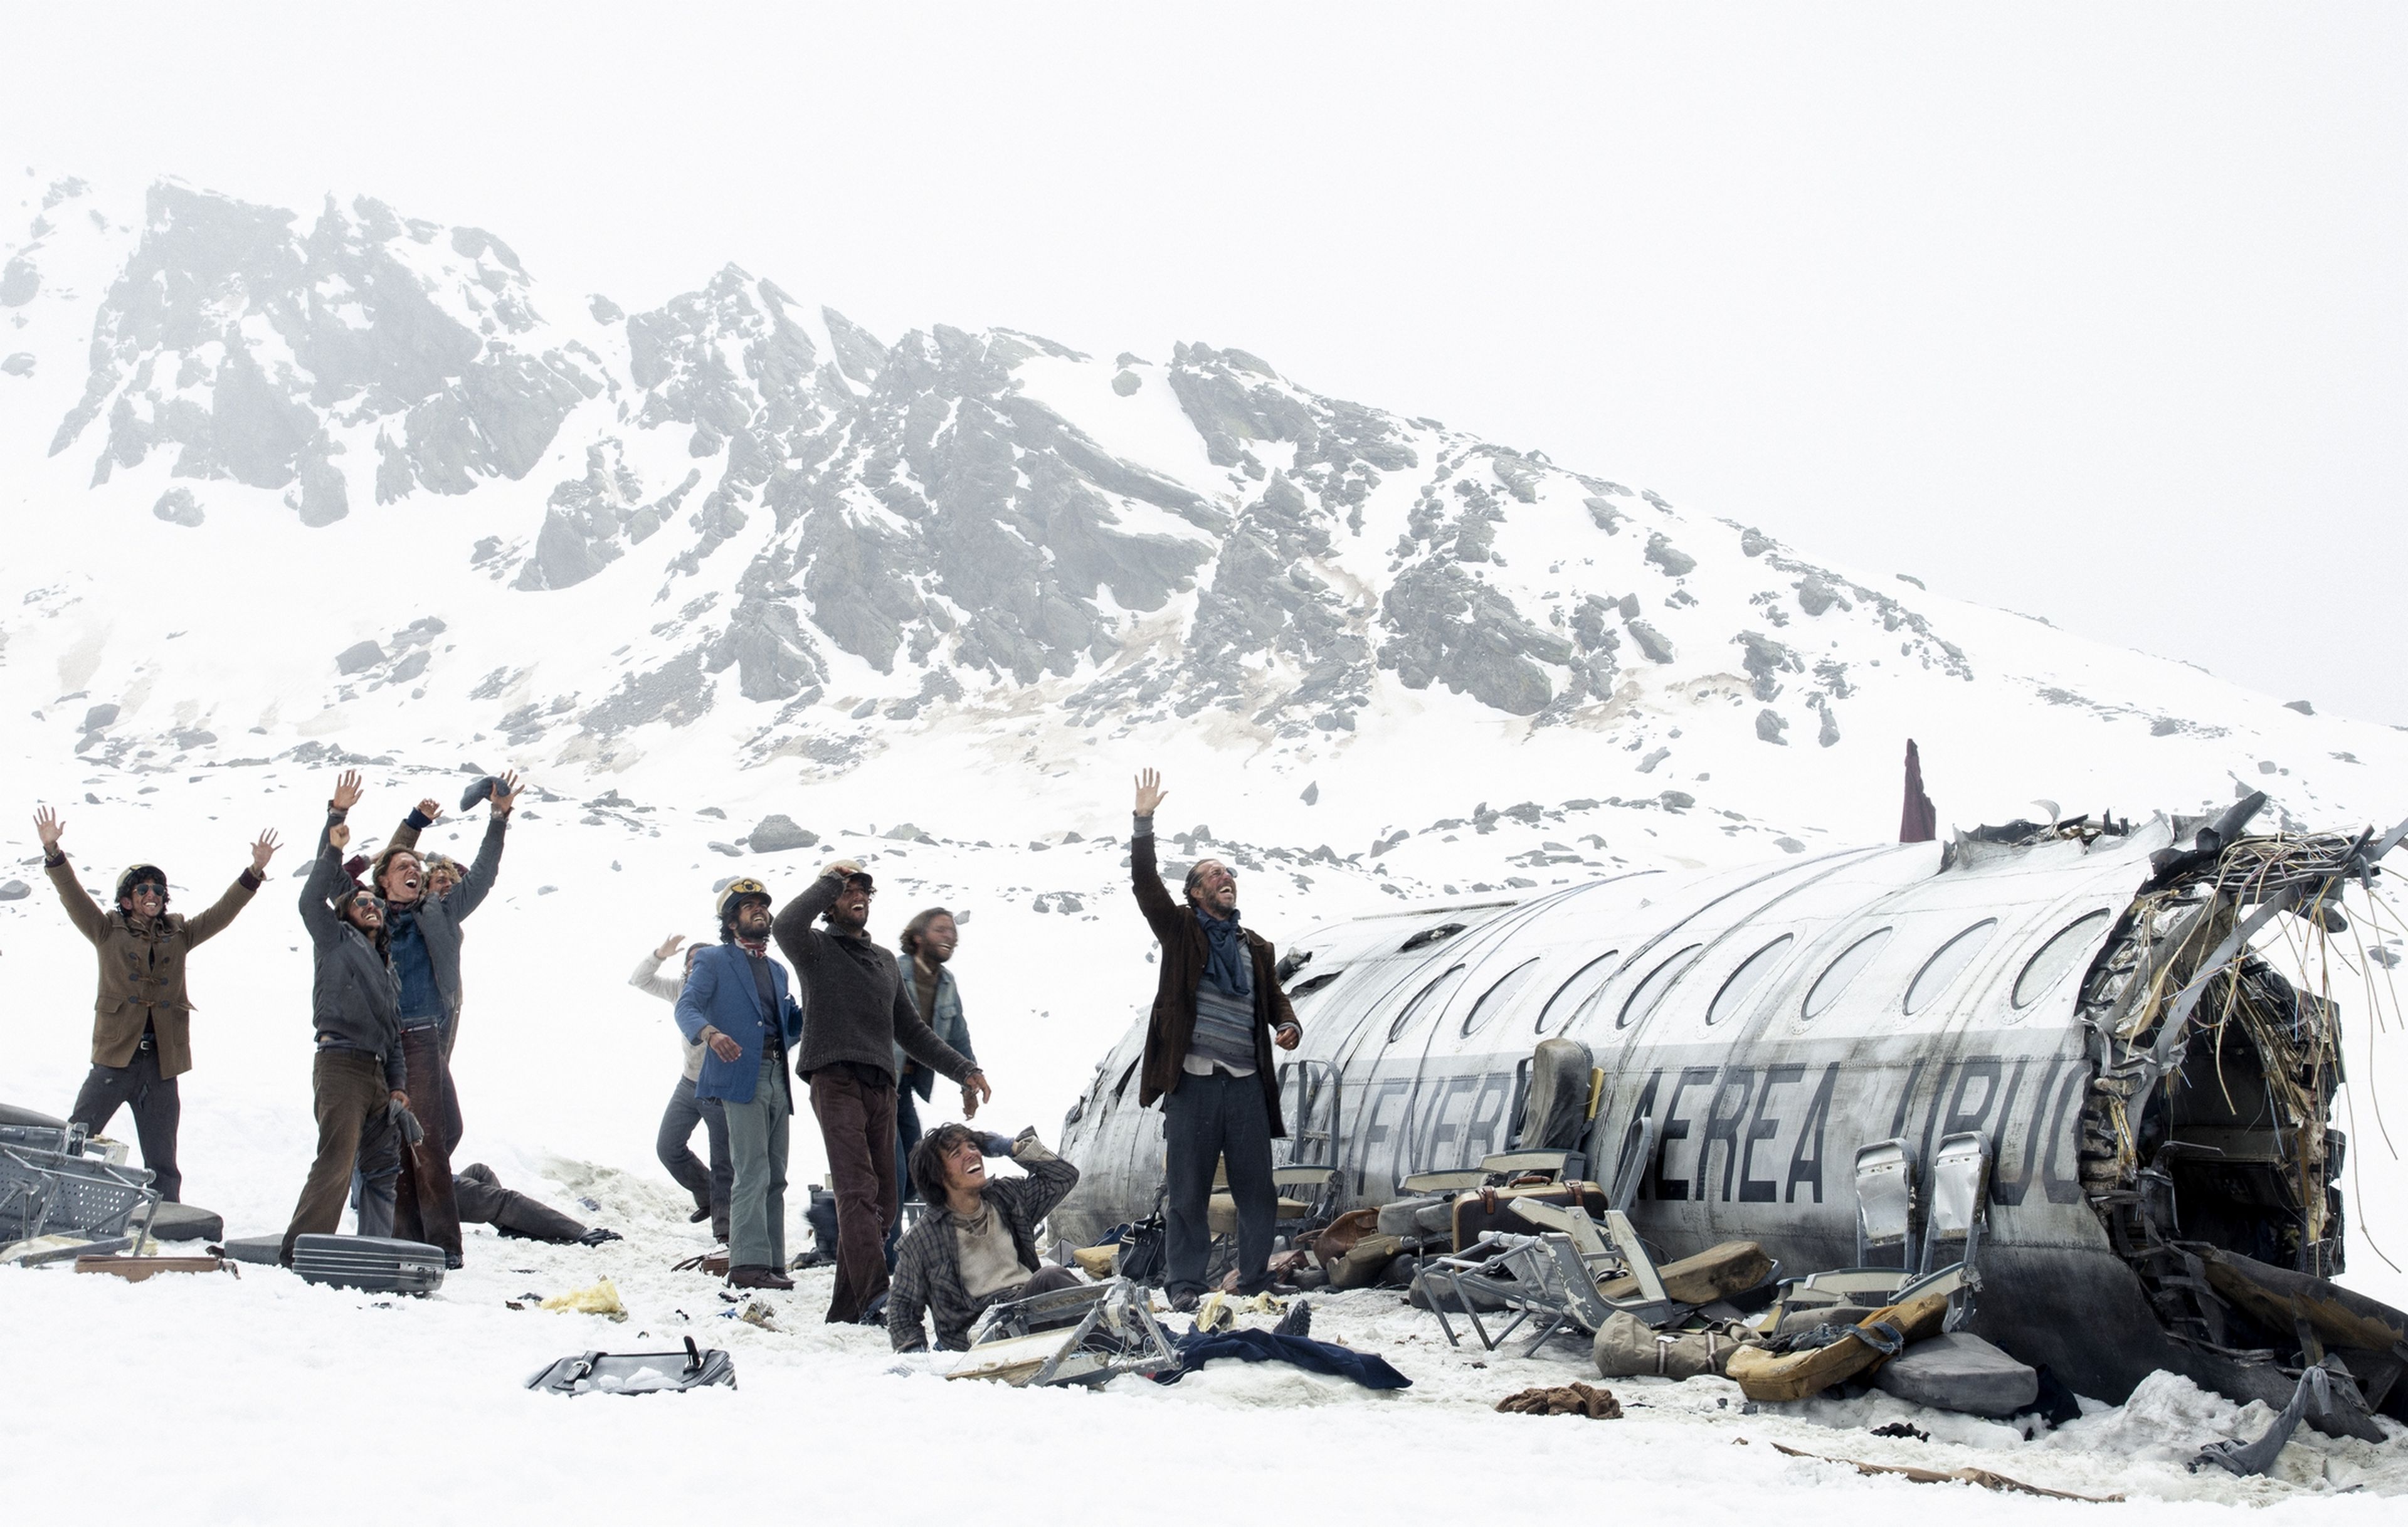 La sociedad de la nieve, la última película de J.A. Bayona, se estrenará en Netflix muy pronto